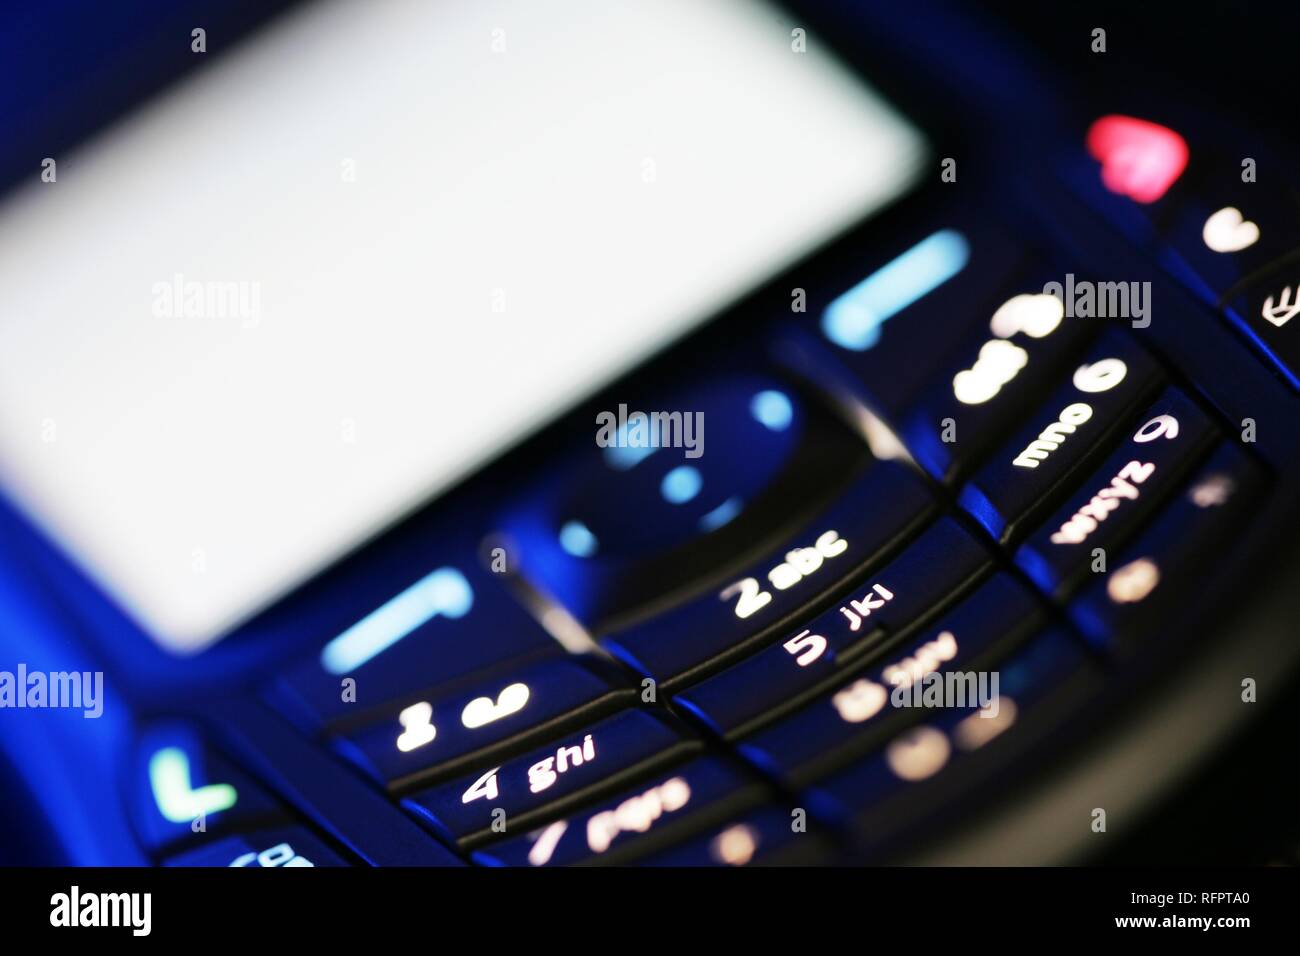 DEU, République fédérale d'Allemagne : votre téléphone portable avec la technologie UMTS. Banque D'Images